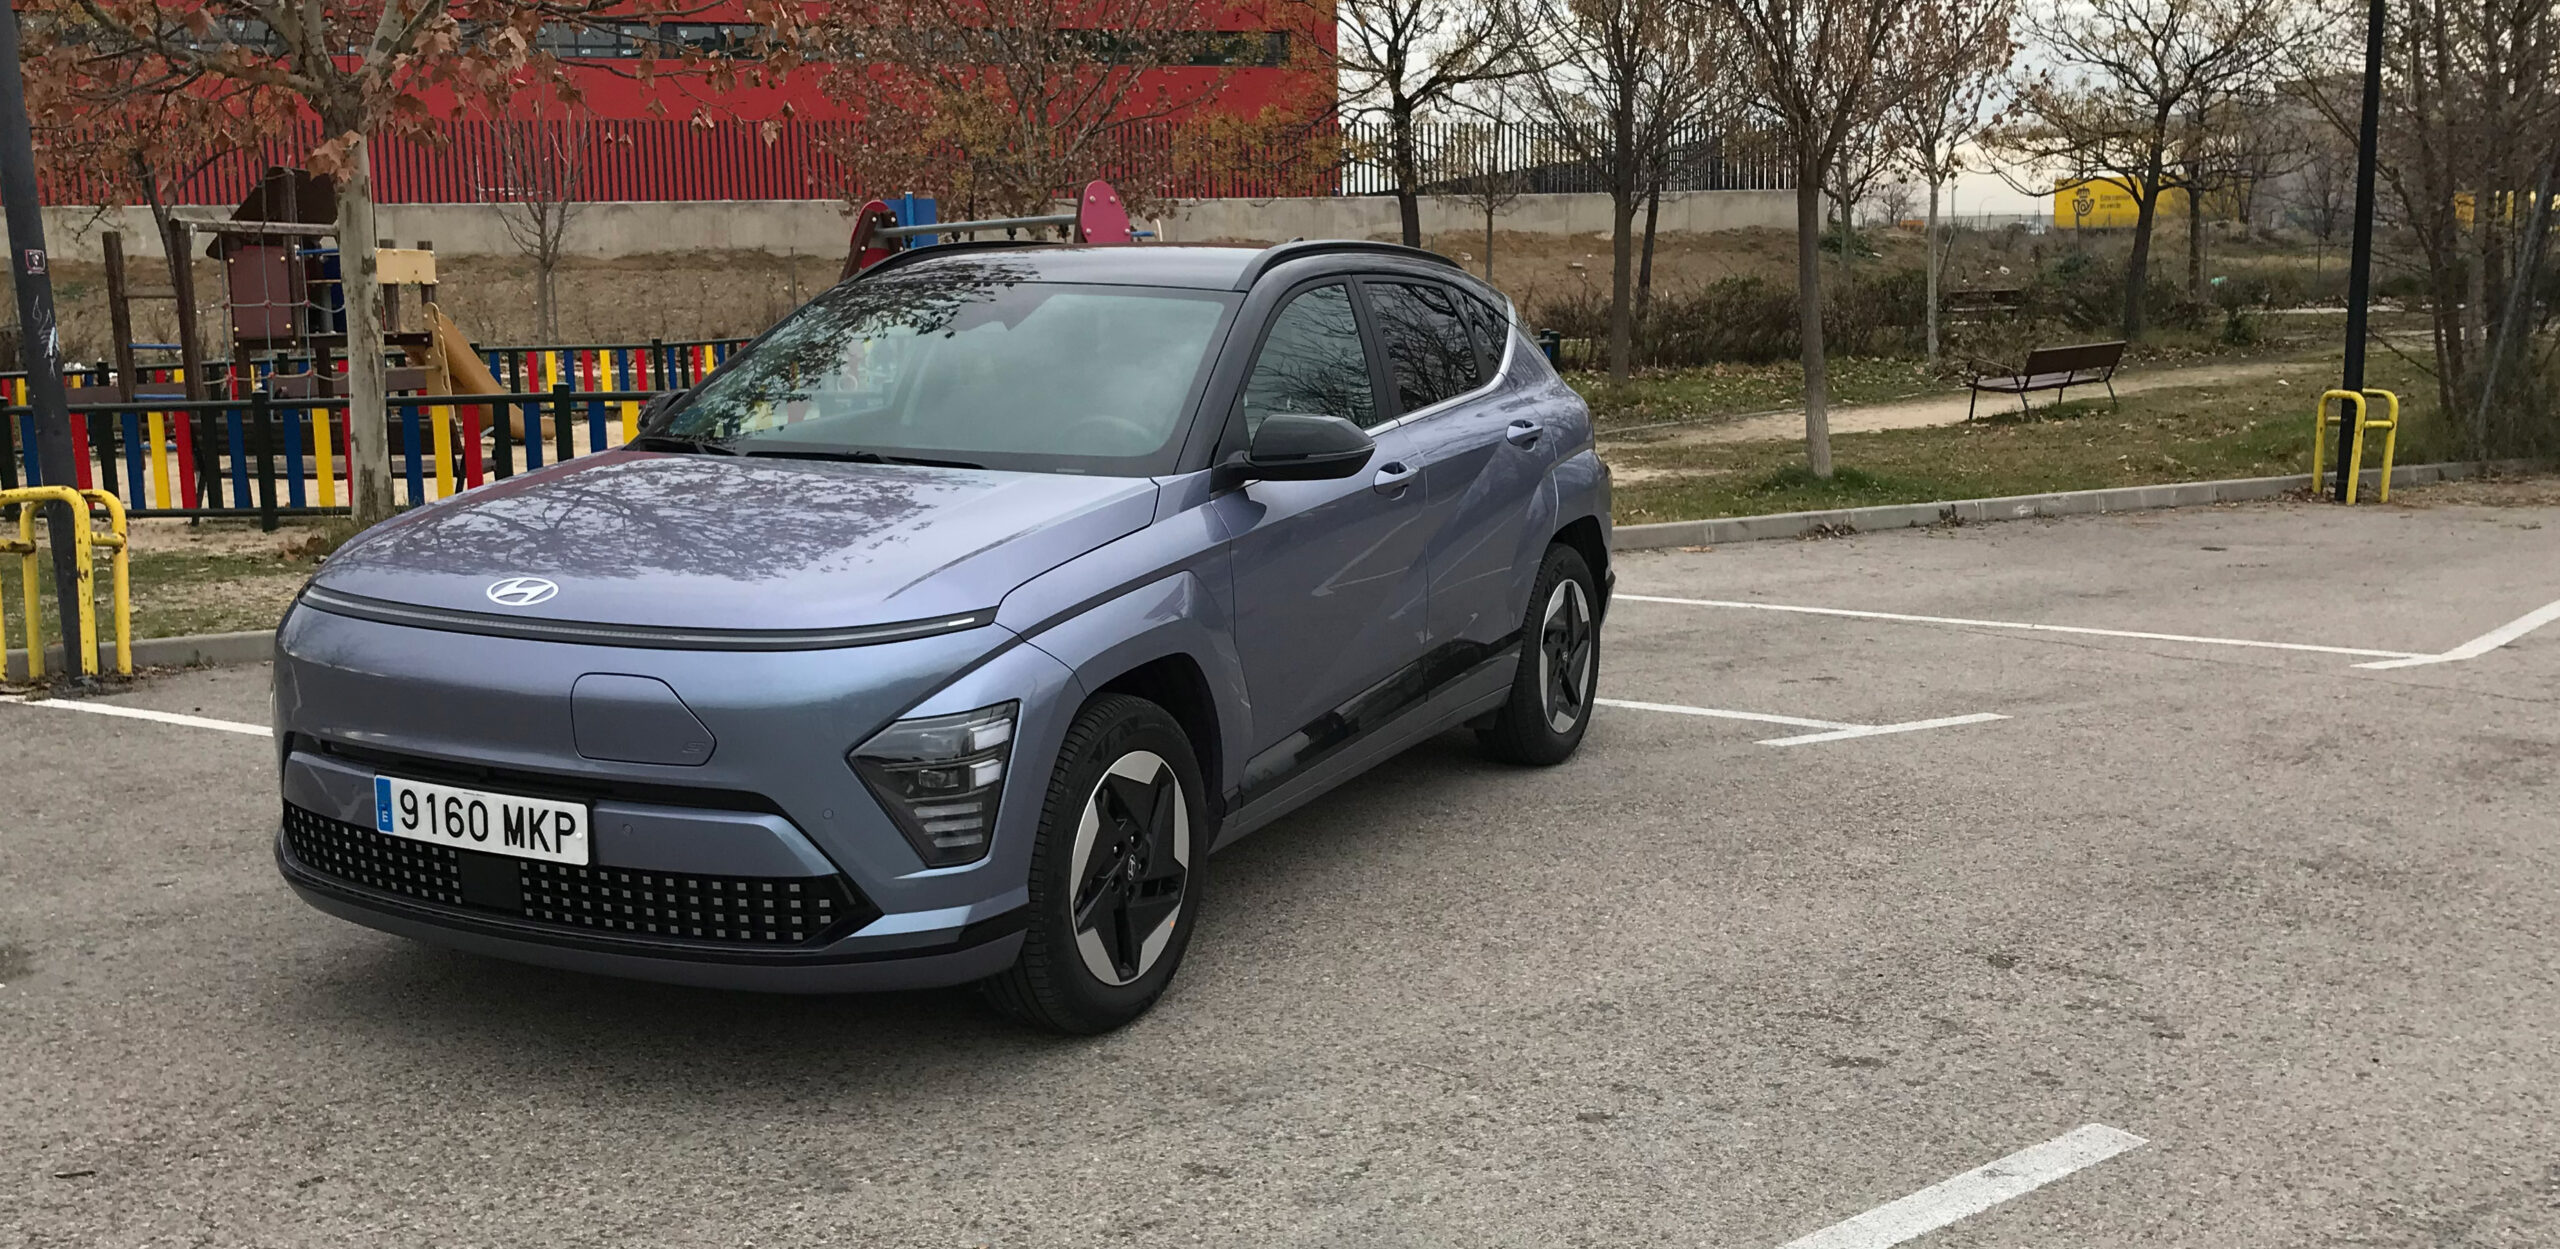 A prueba el Nuevo Hyundai Kona EV renovación muy mejorada